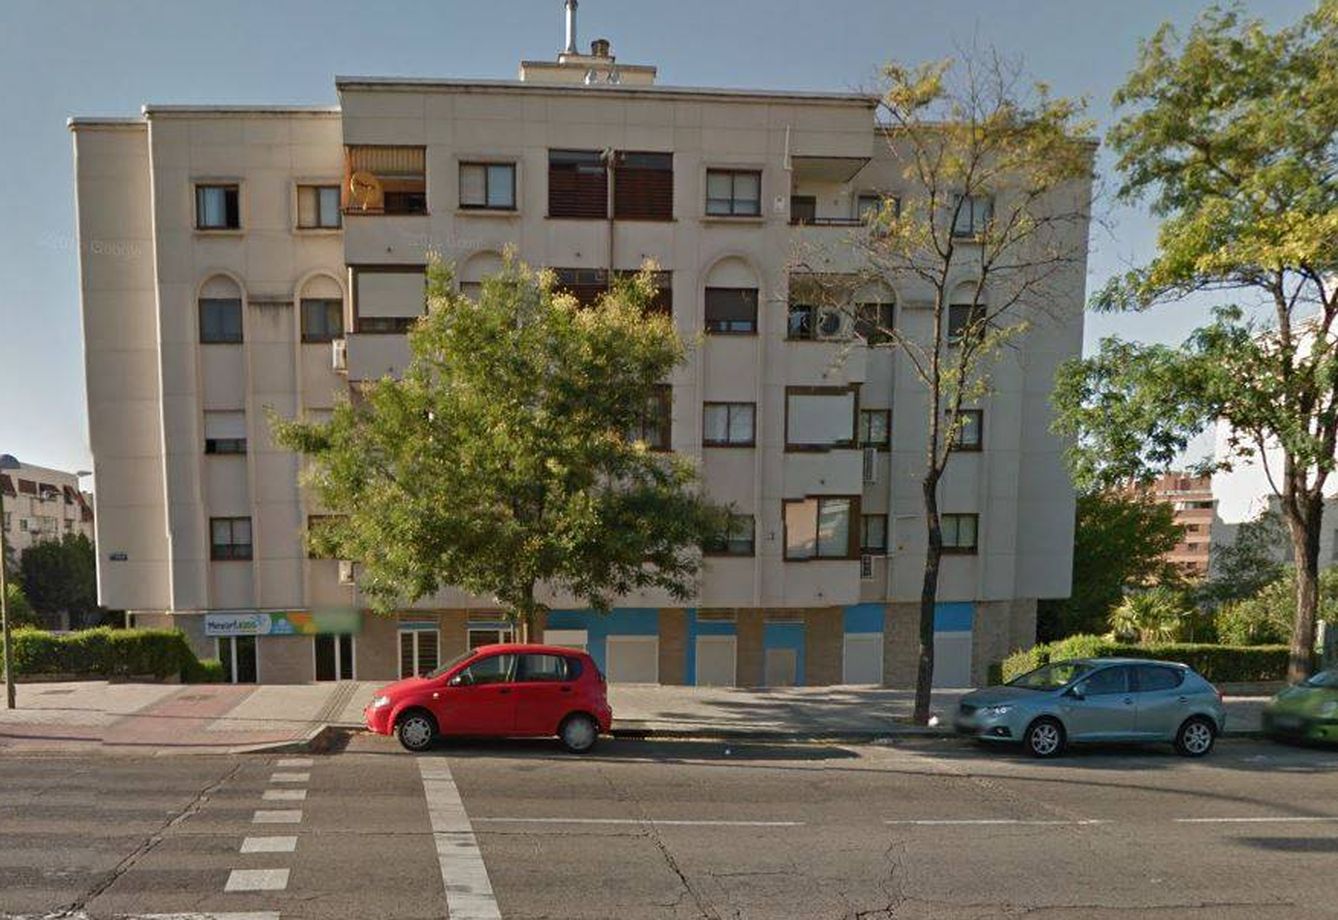 Fachada del piso que Merche tiene en Madrid, en el barrio de Barajas